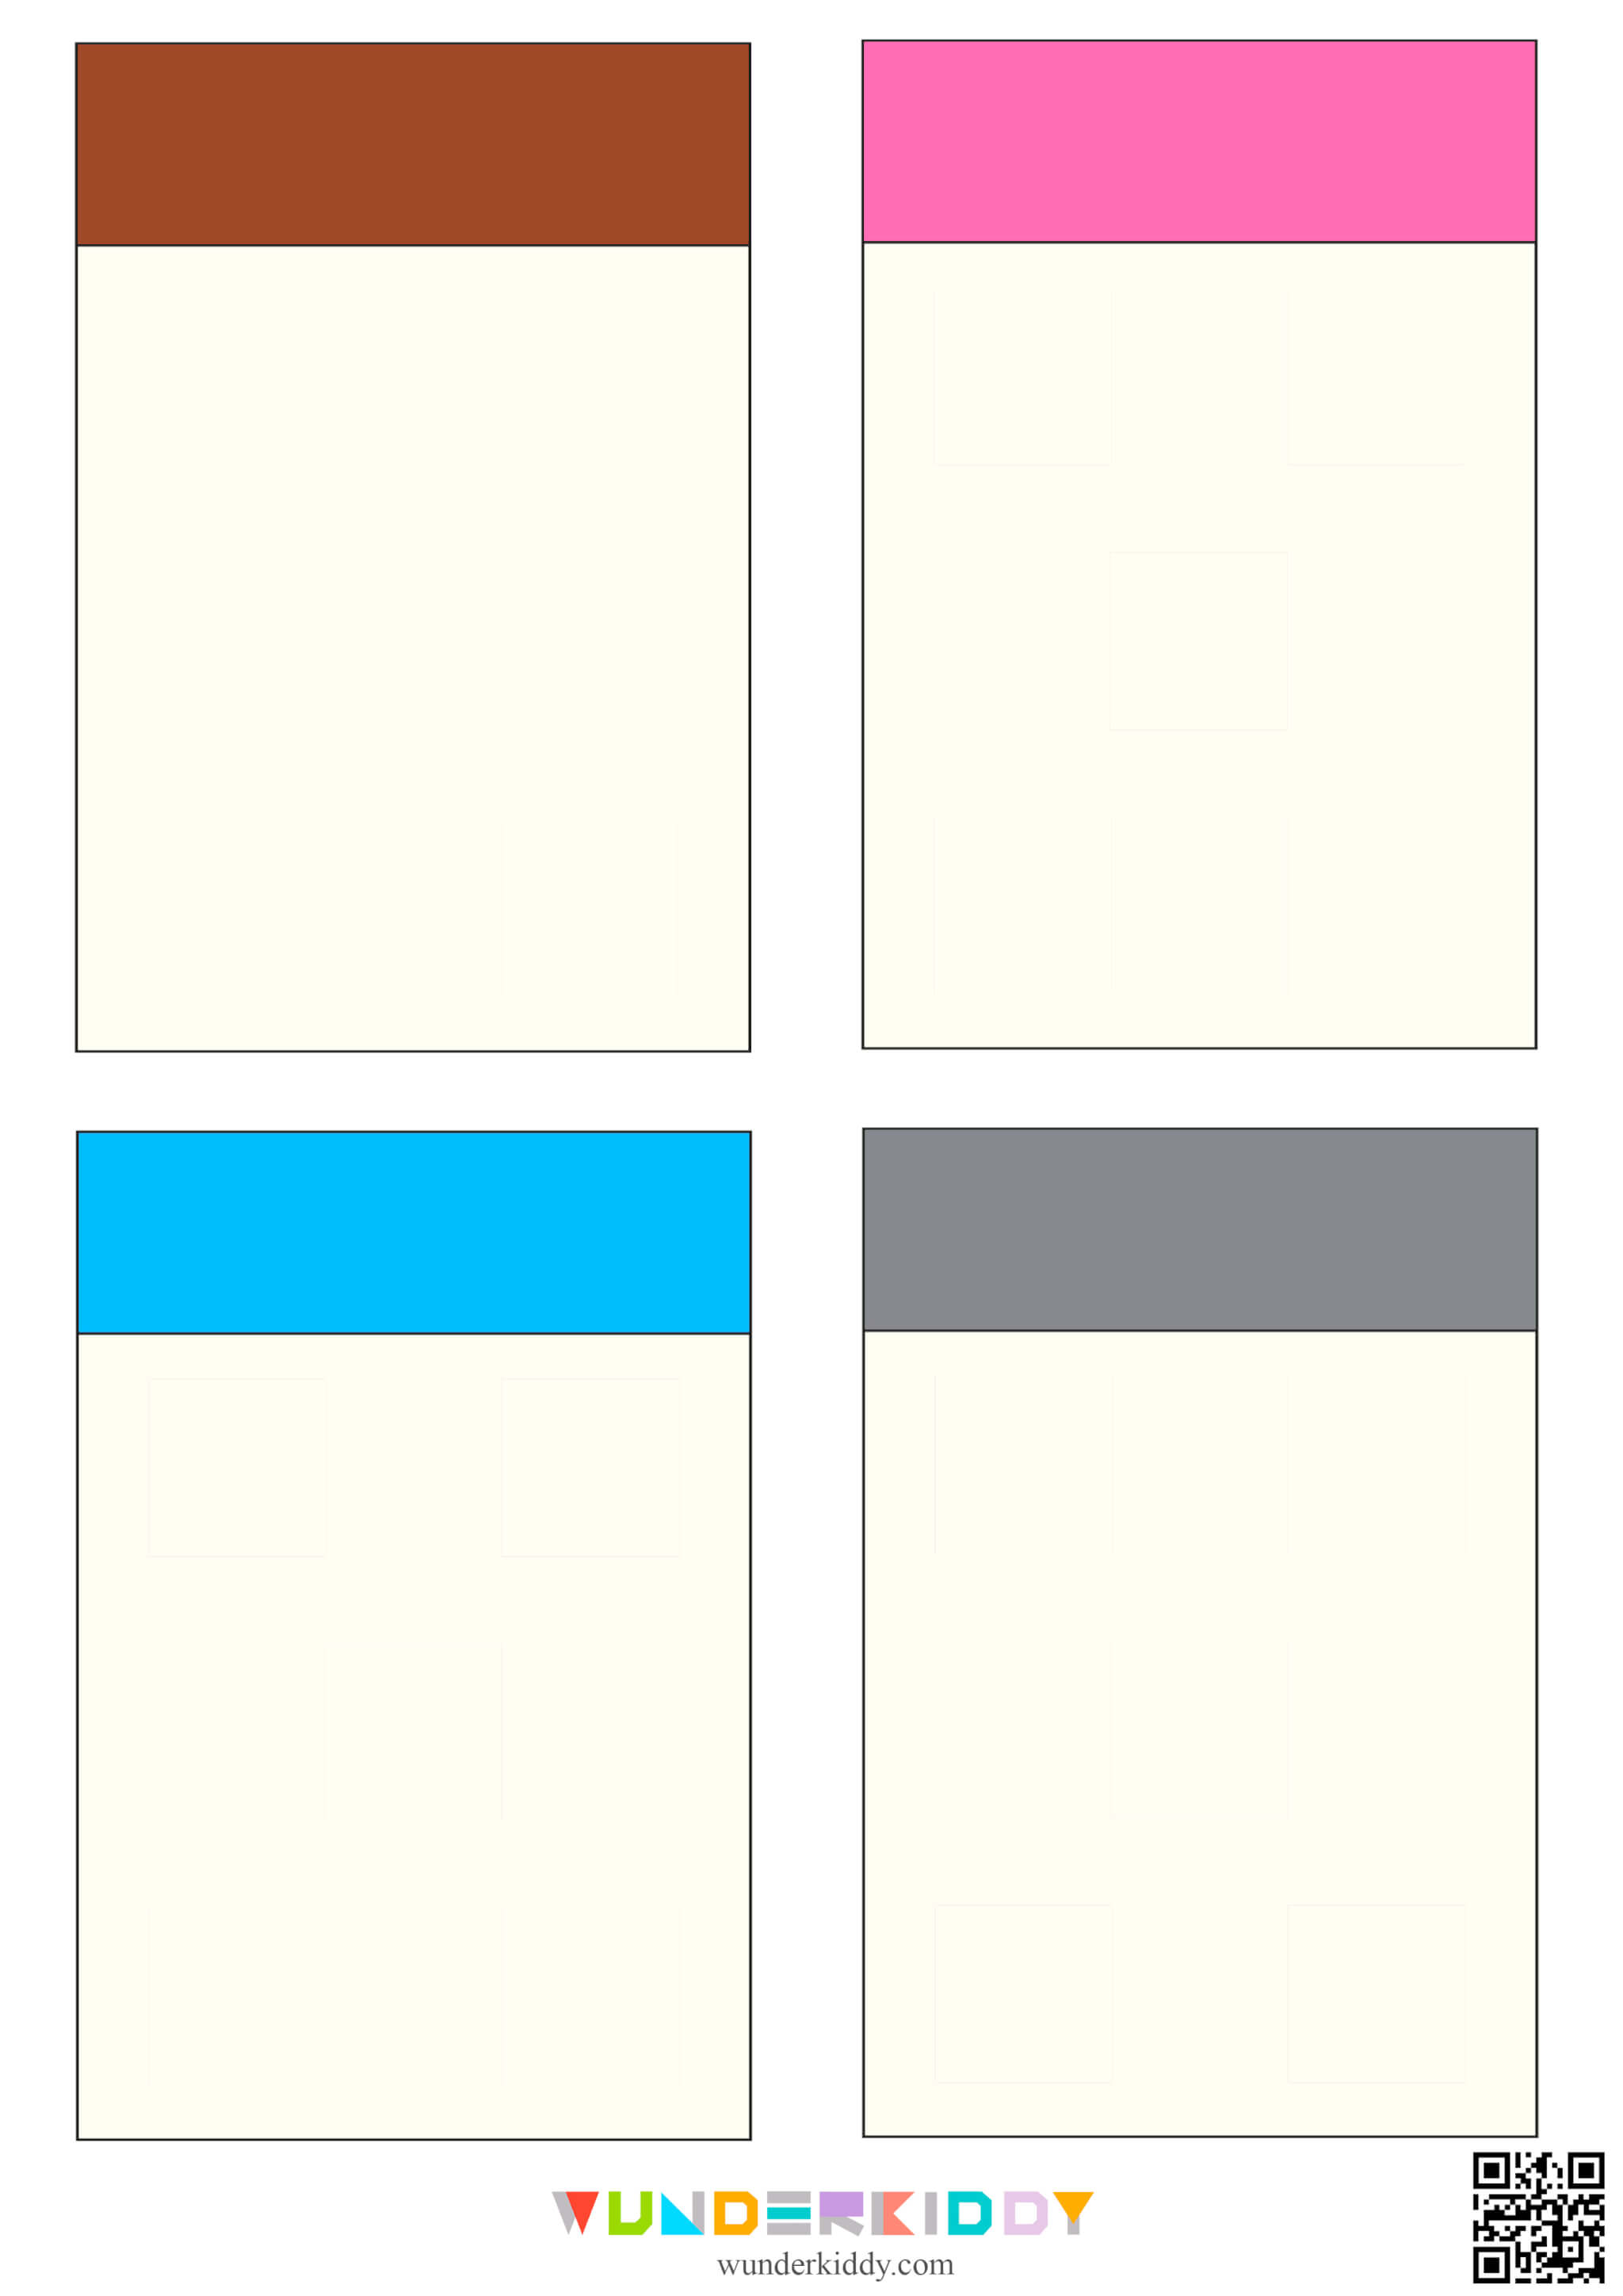 Color Sorting Worksheet for Kids - Image 4